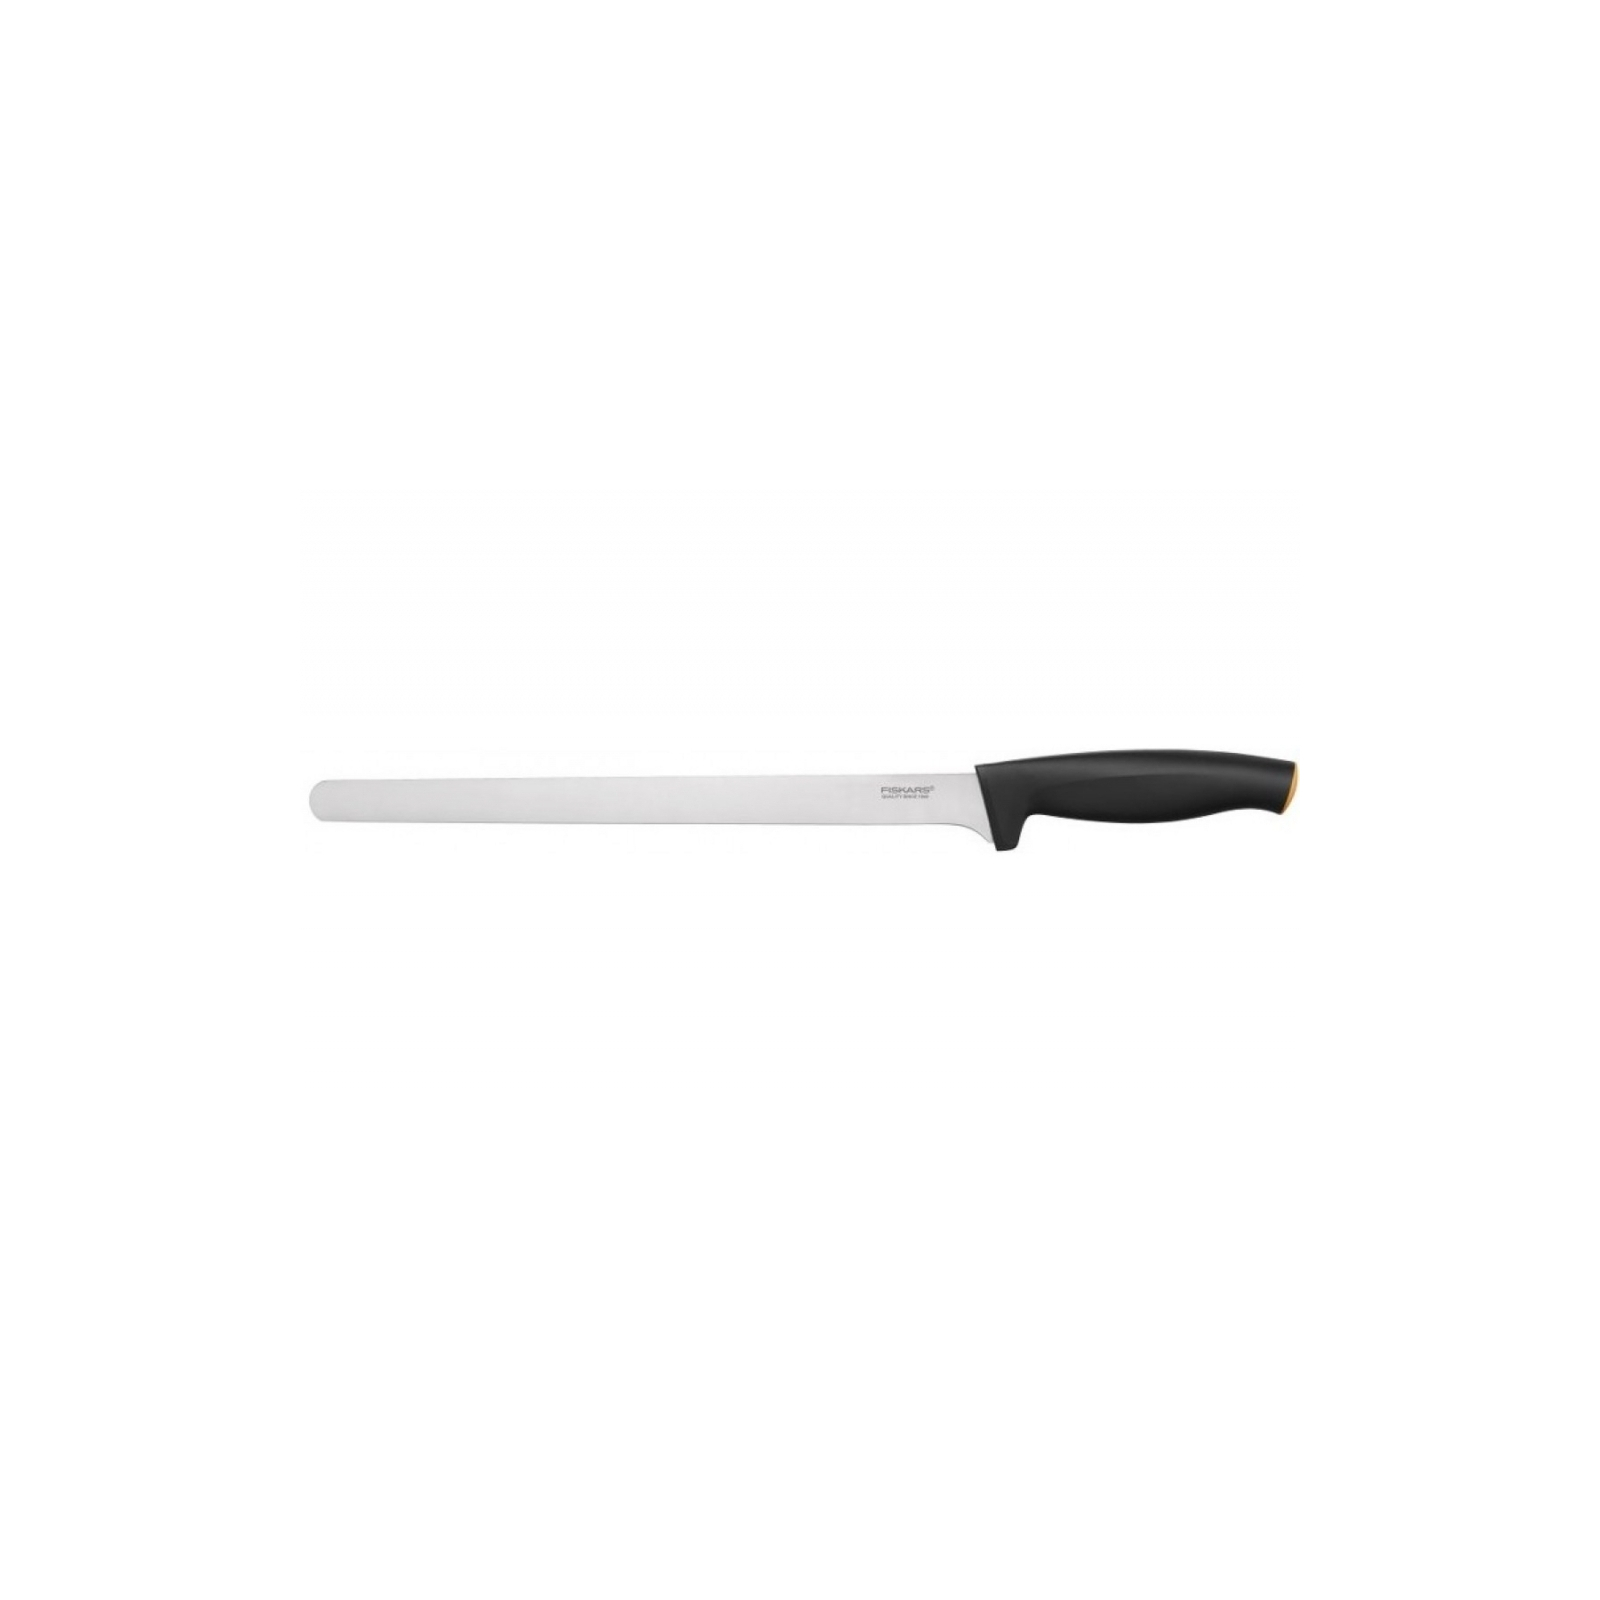 Кухонный нож Fiskars Functional Form для ветчины и лосося 28 см Black (1014202)